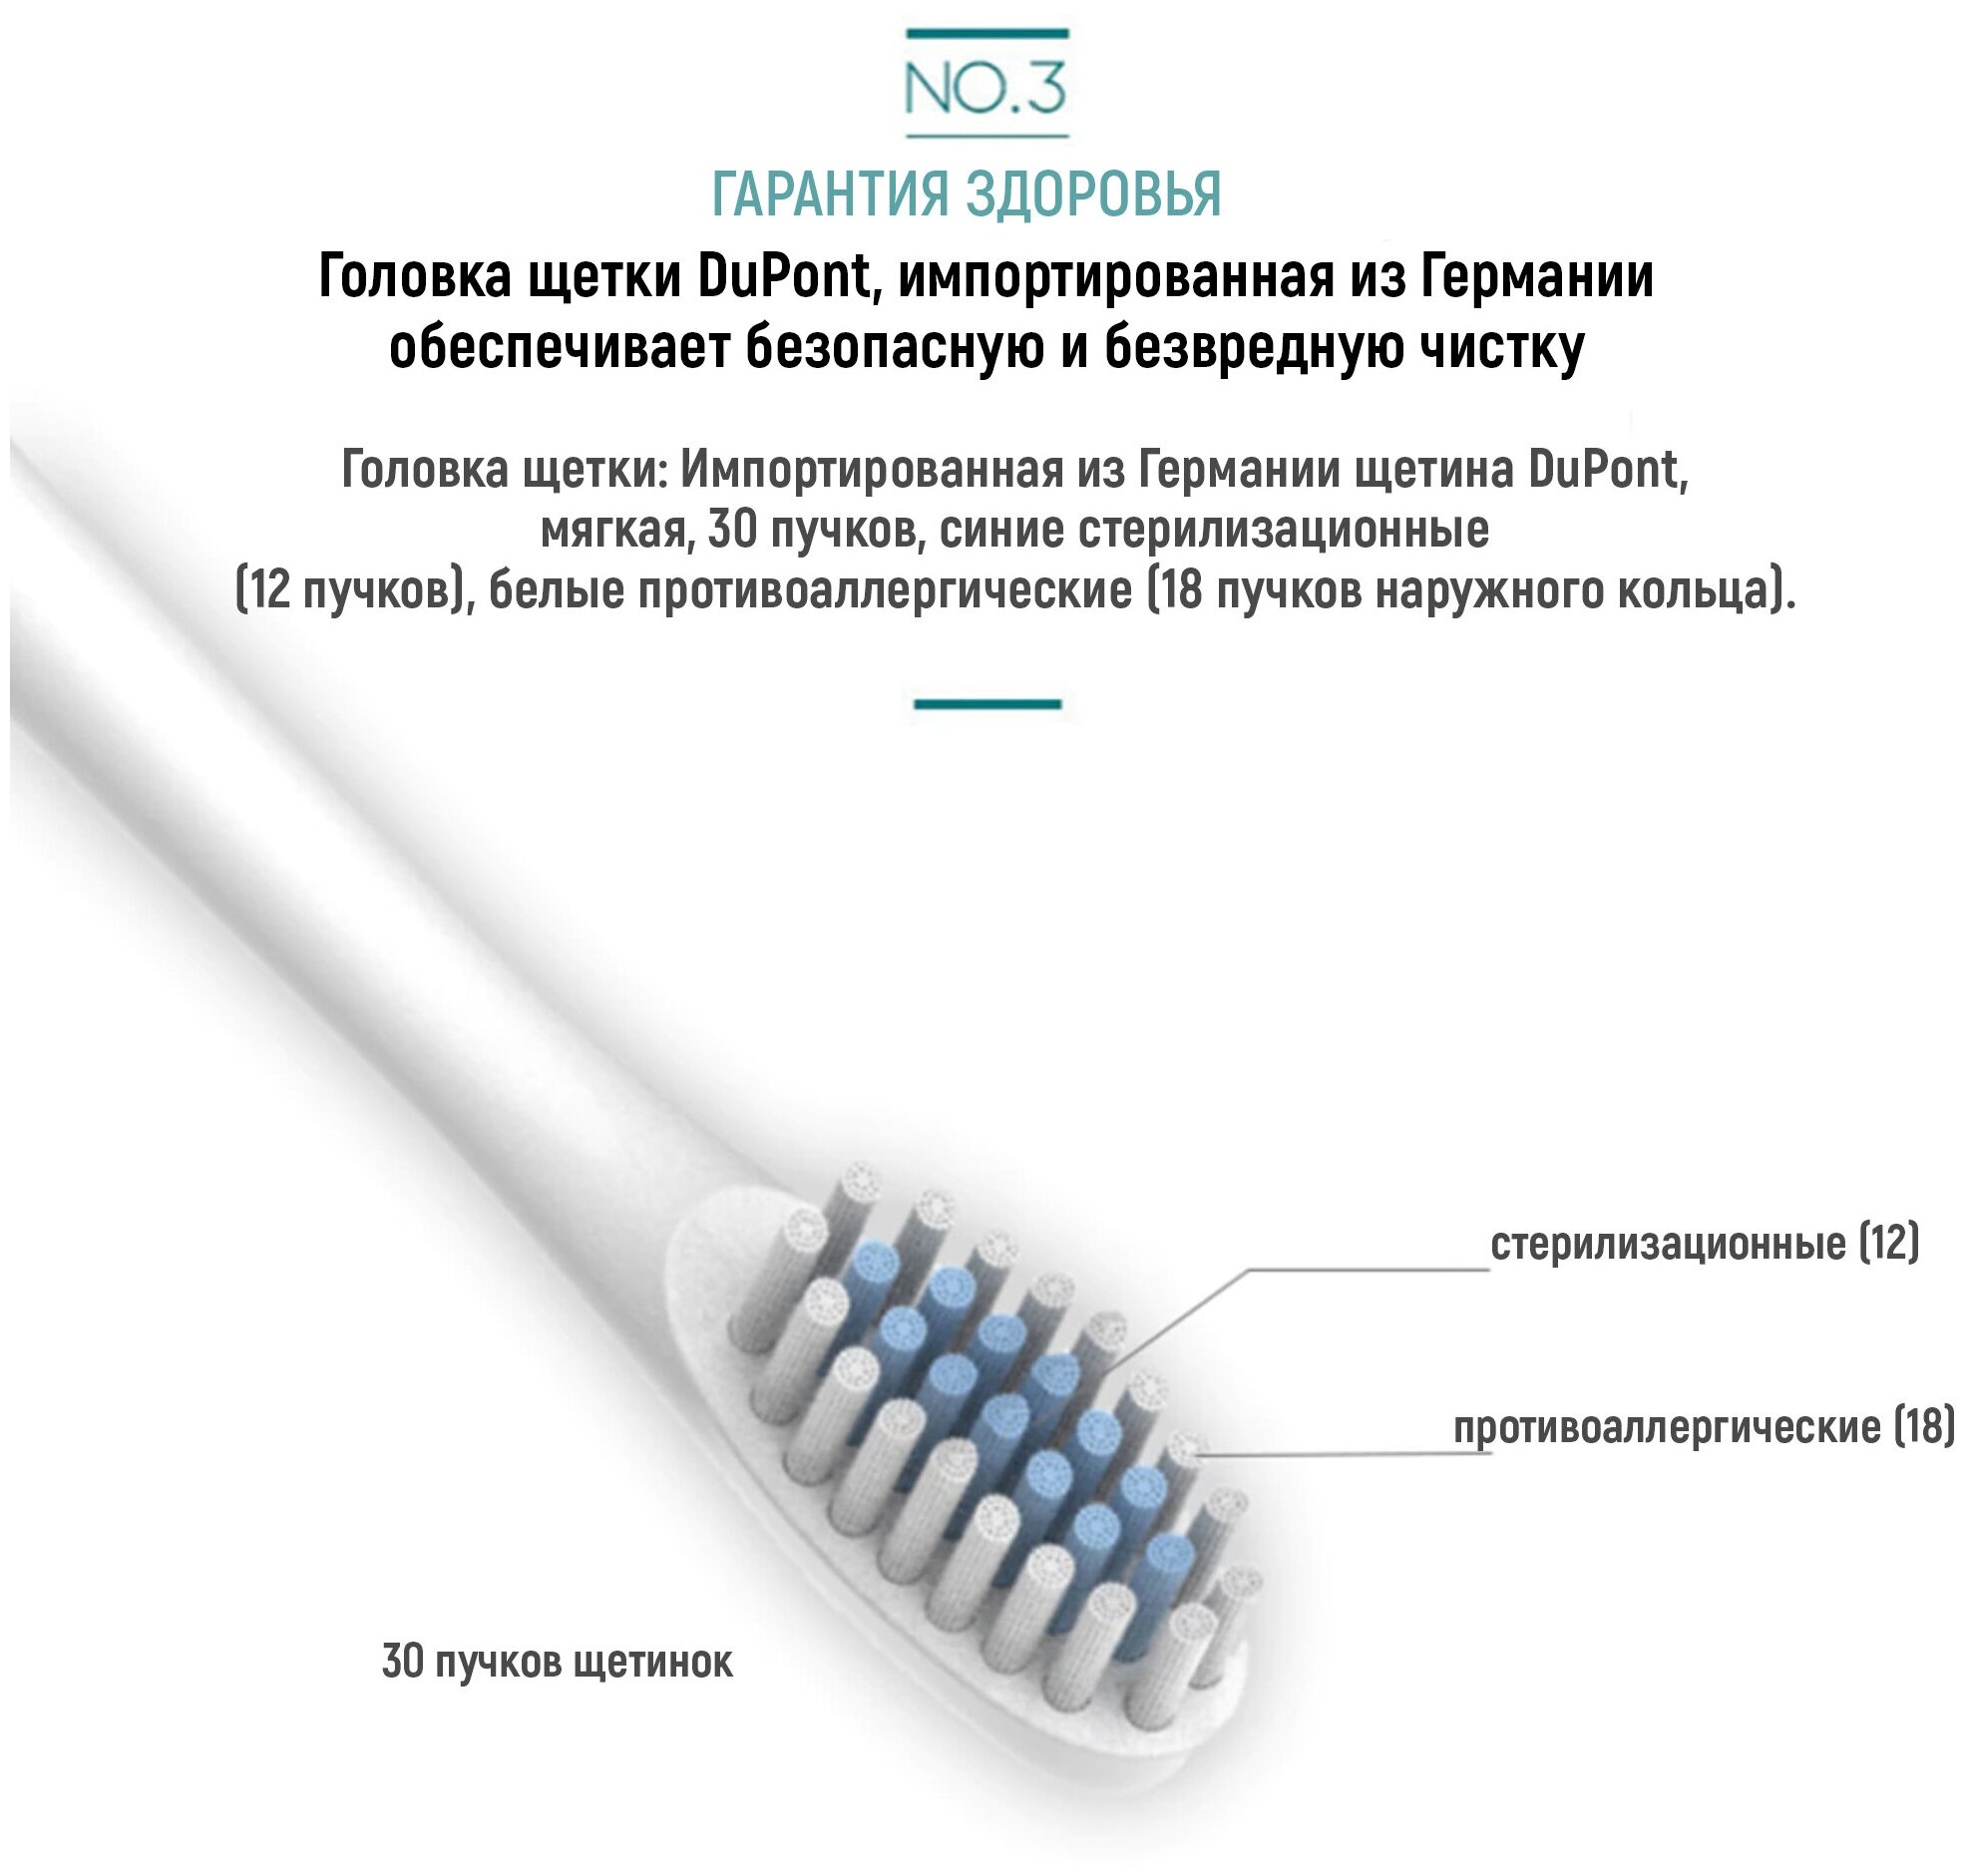 Электрическая зубная щётка  Звуковая электрическая зубная щетка с 4 насадками и 6 уникальными режимами